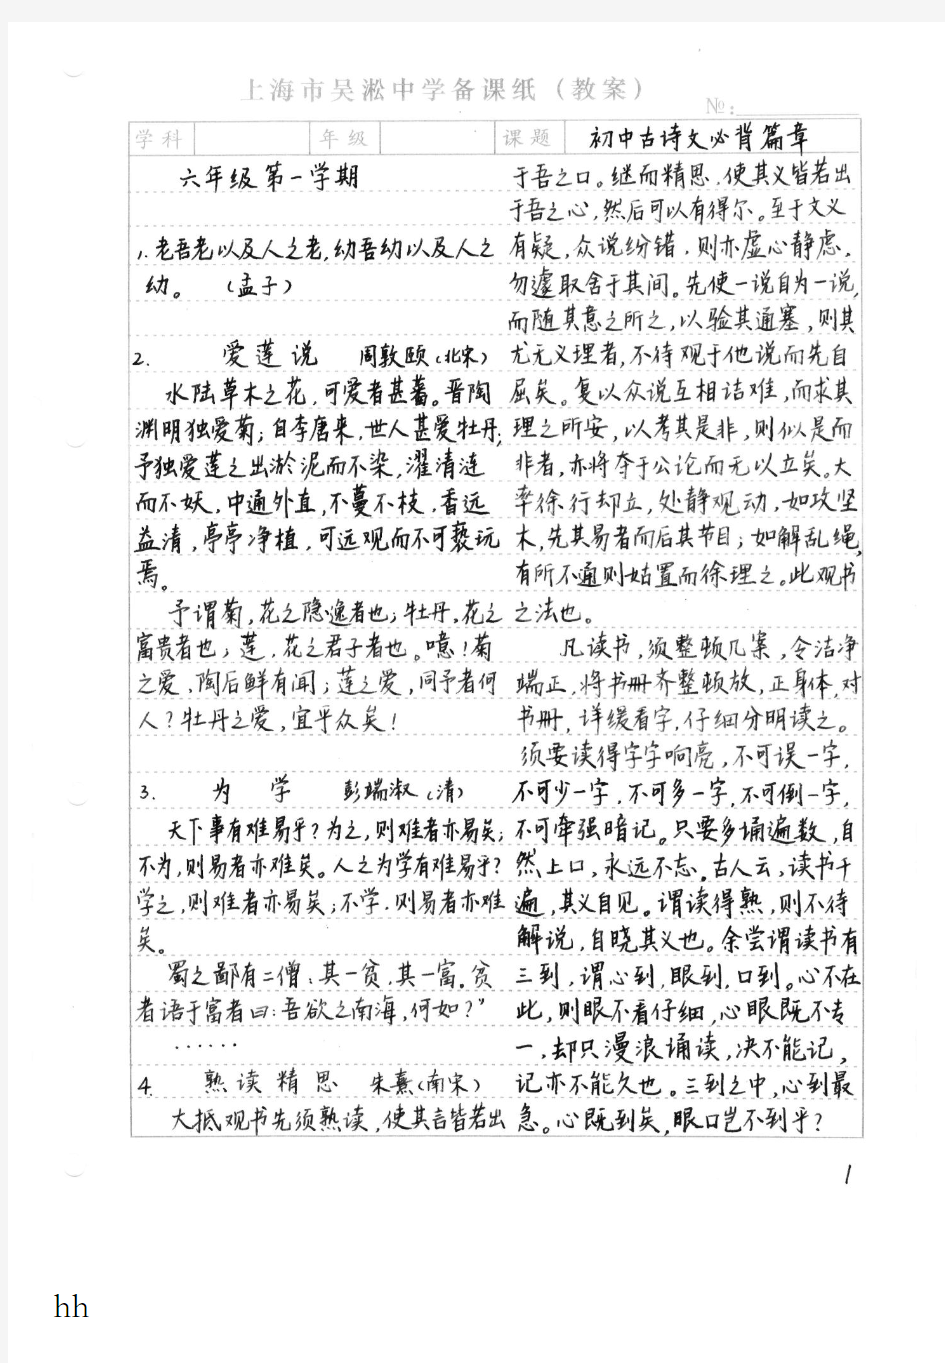 上海市初中语文教材必背篇章(六年级——九年级)